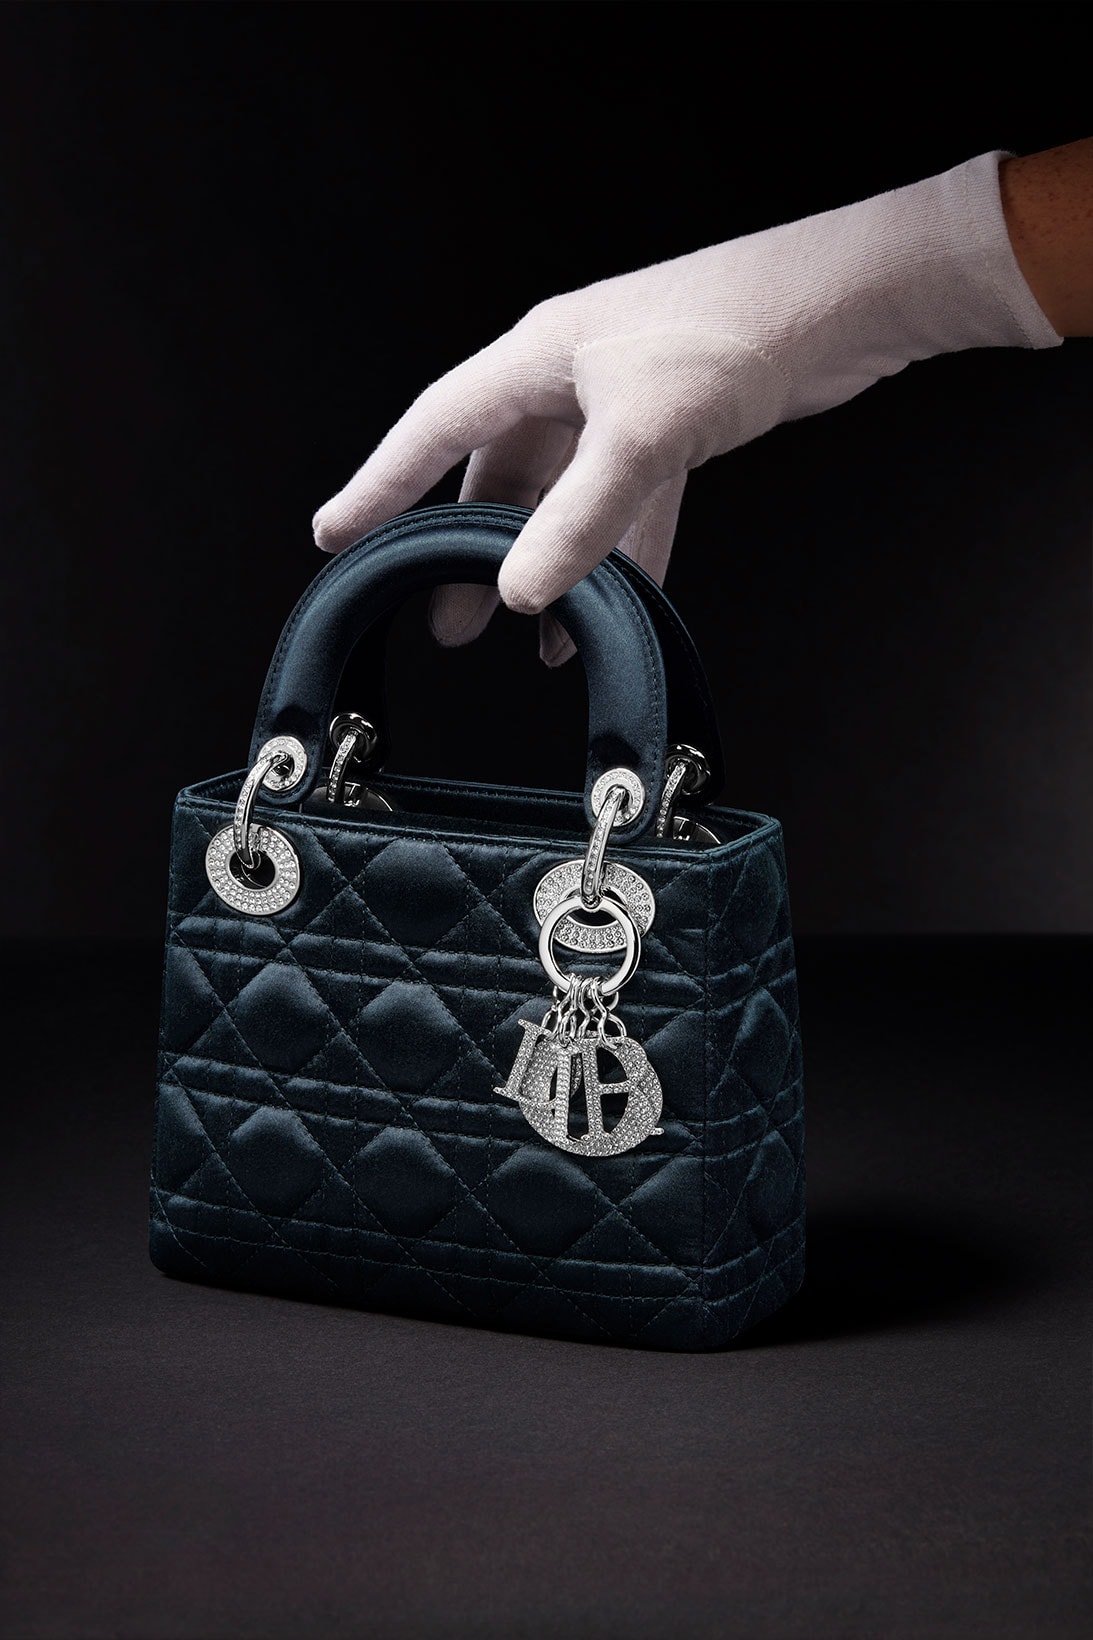 Dior's most famous Handbags